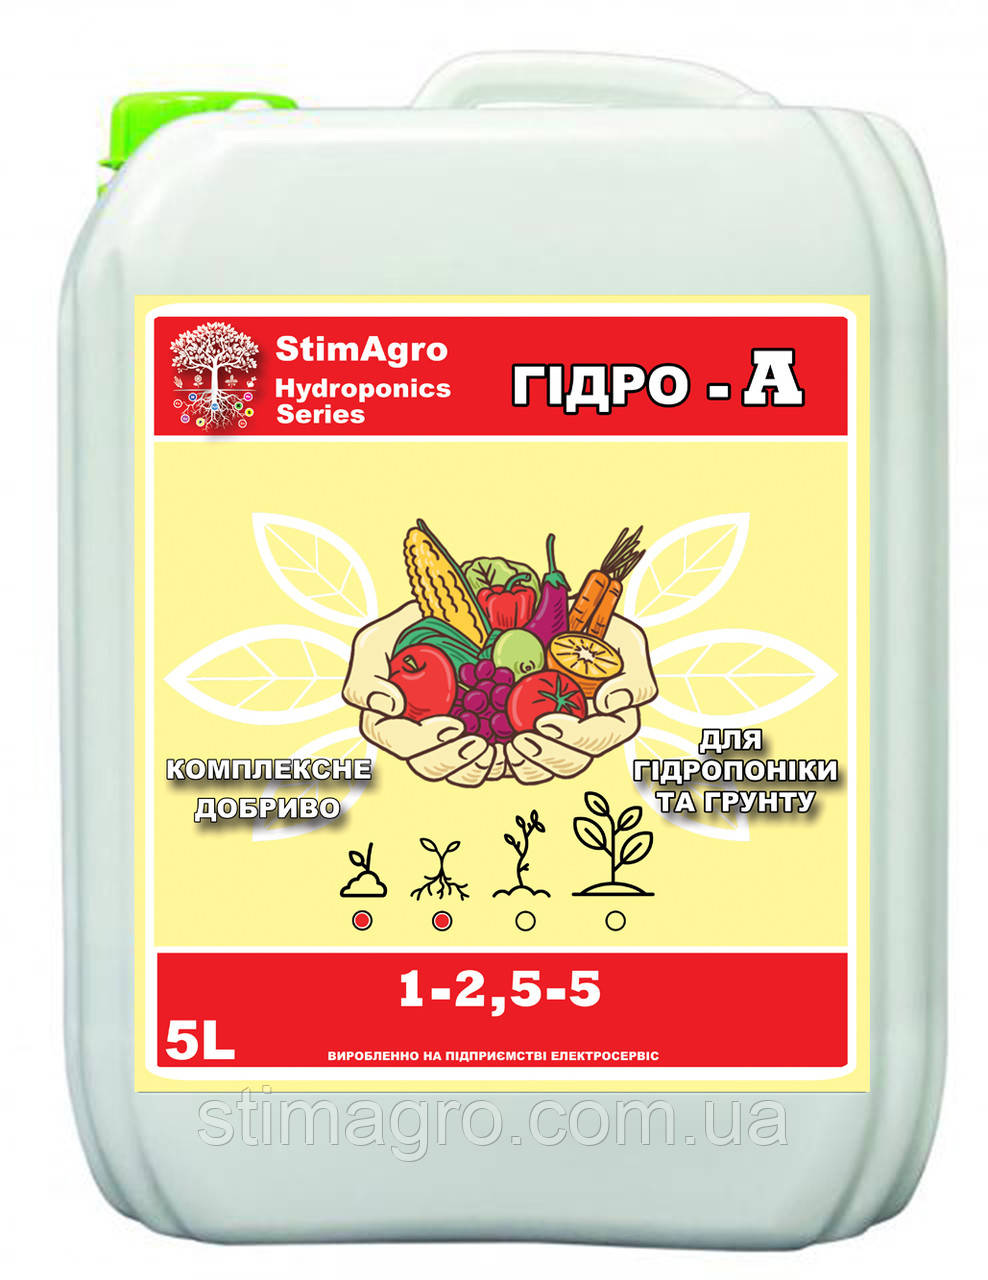 StimAgro добрива для гідропоніки та грунту ГІДРО-А 1-2,5-5 5L